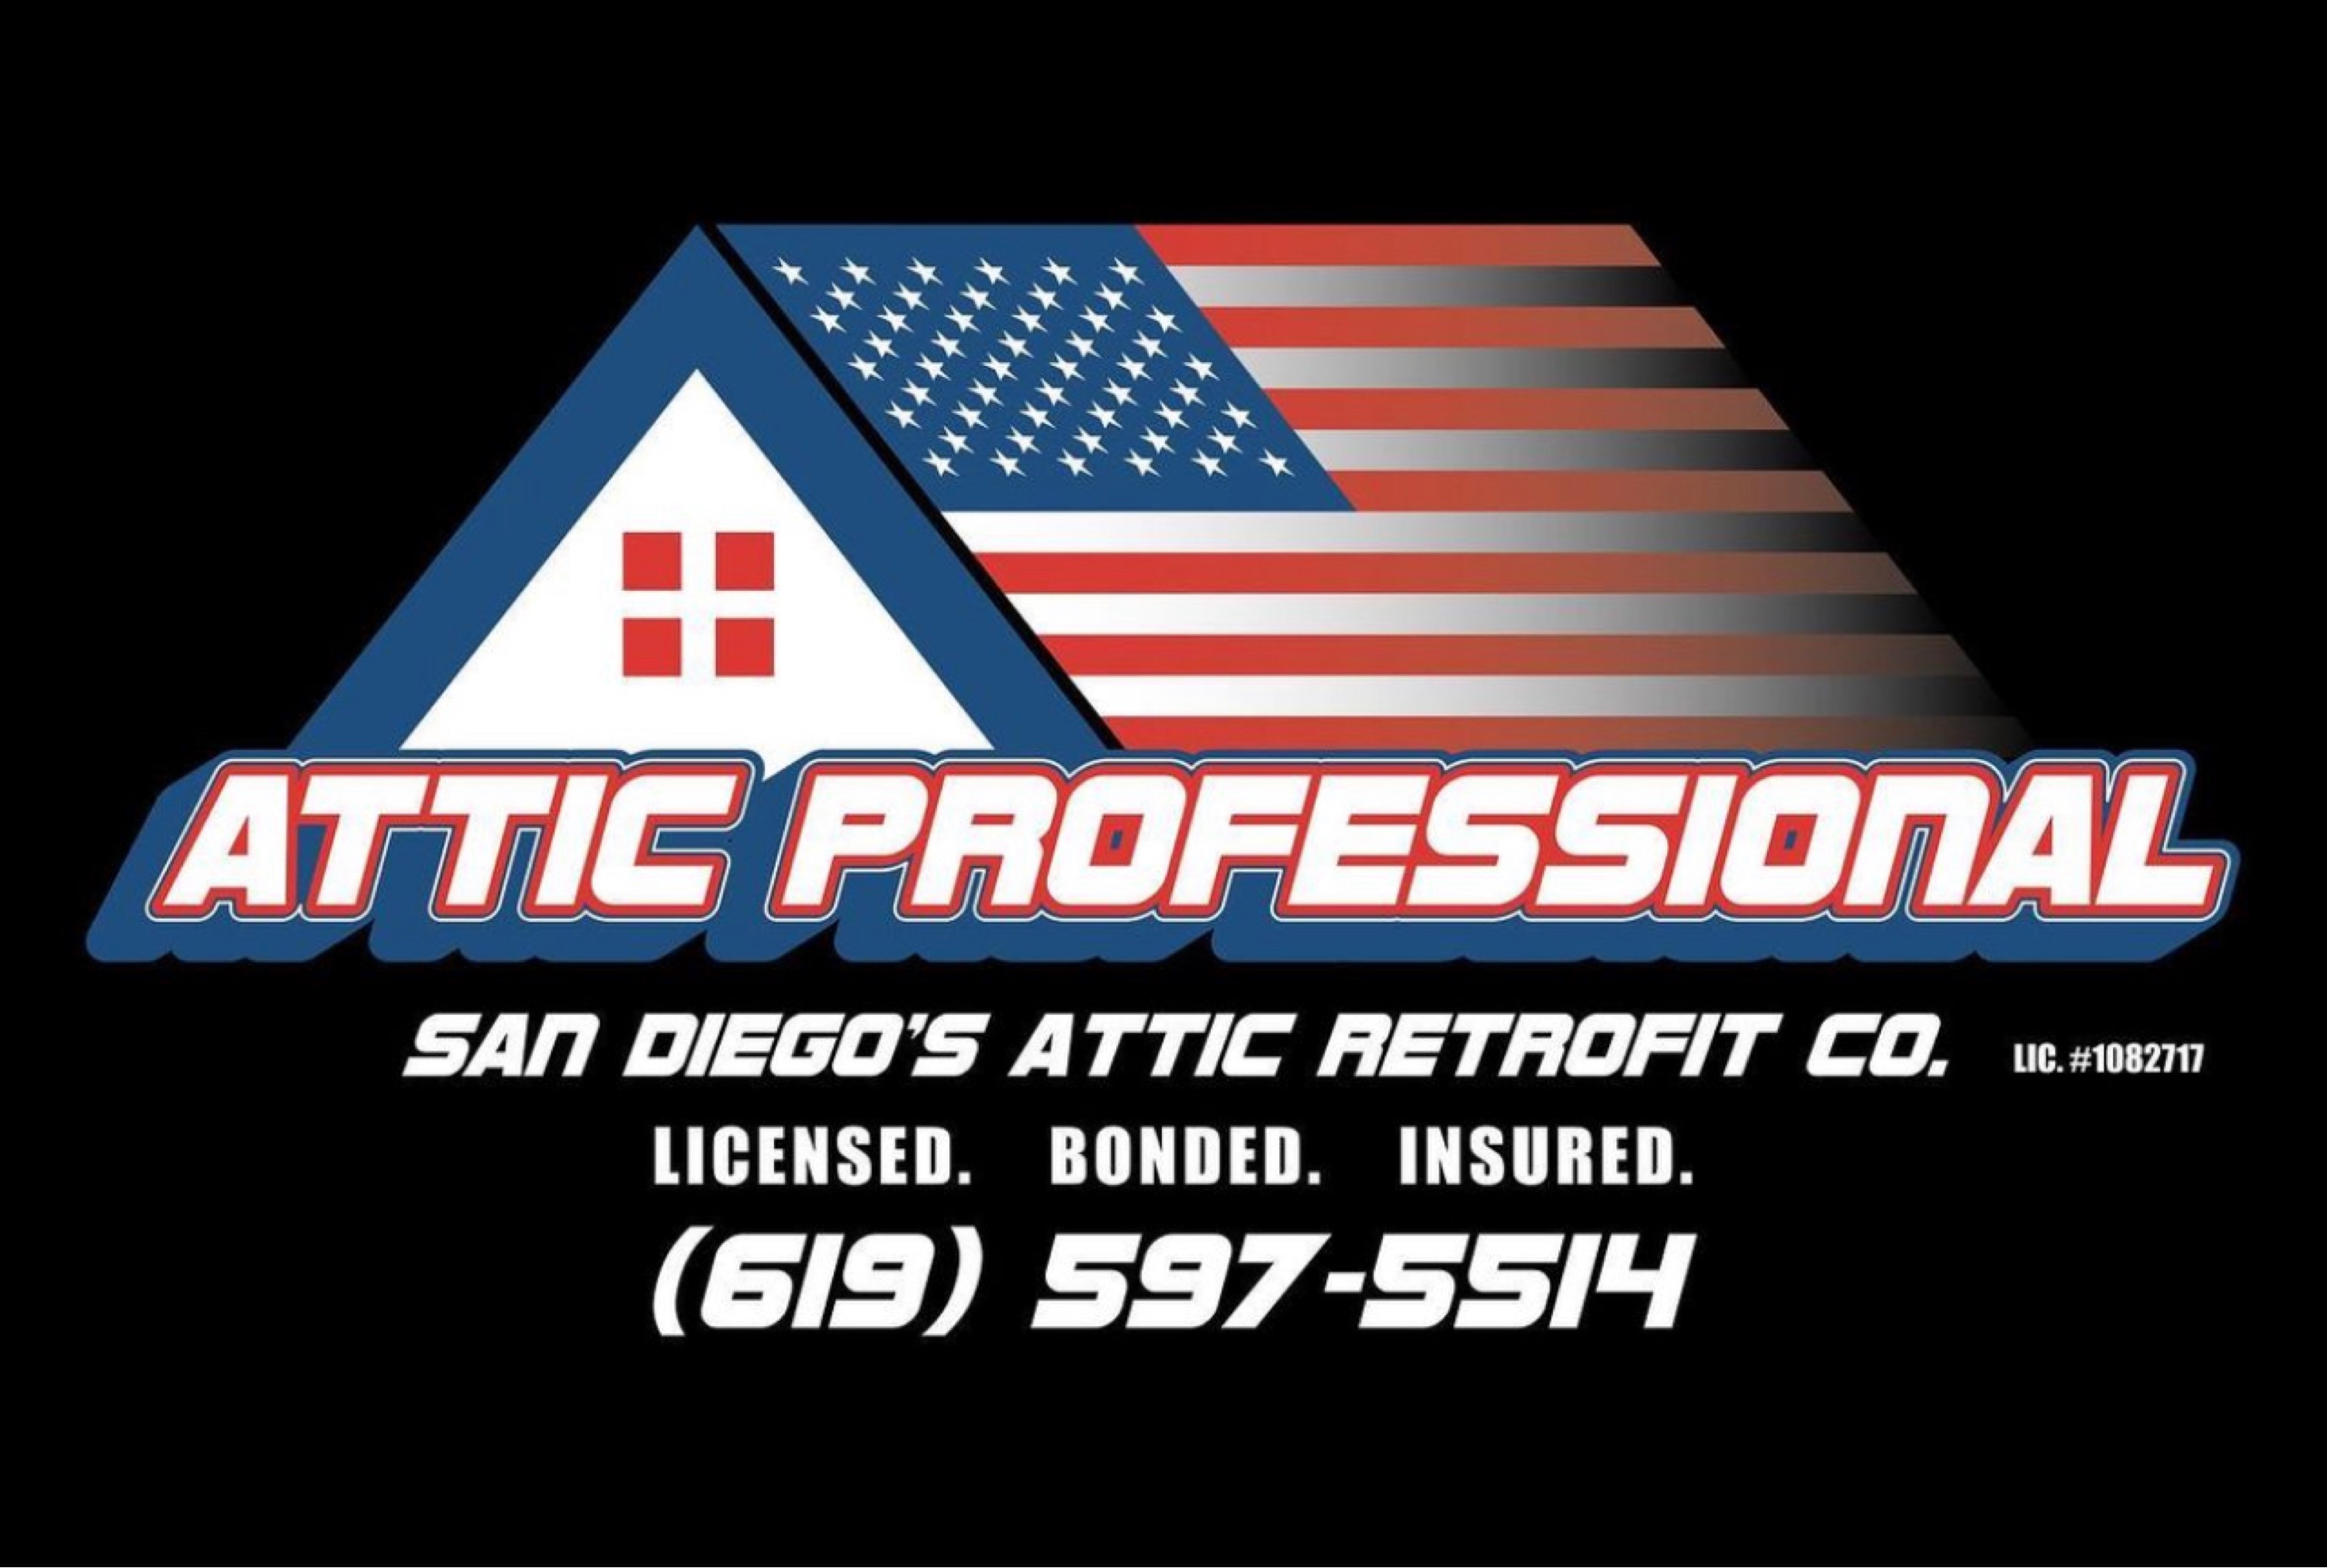 Attic Professional Logo